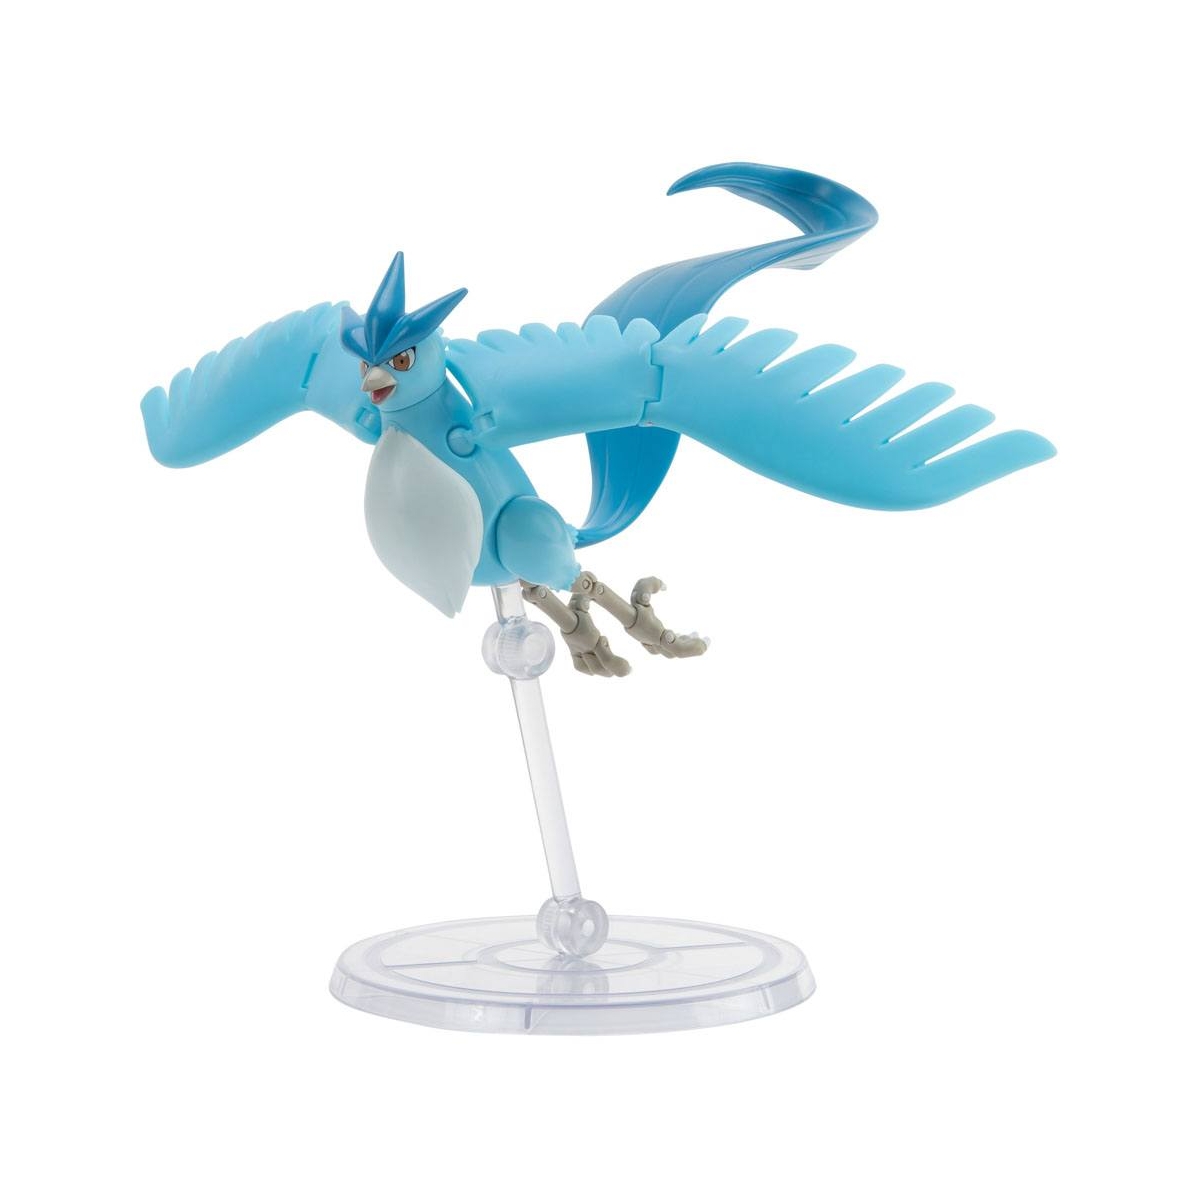 Figurine Pokémon 25e anniversaire Select Dracaufeu 15 cm - BOTI - Blanc -  Intérieur - Cdiscount Jeux - Jouets